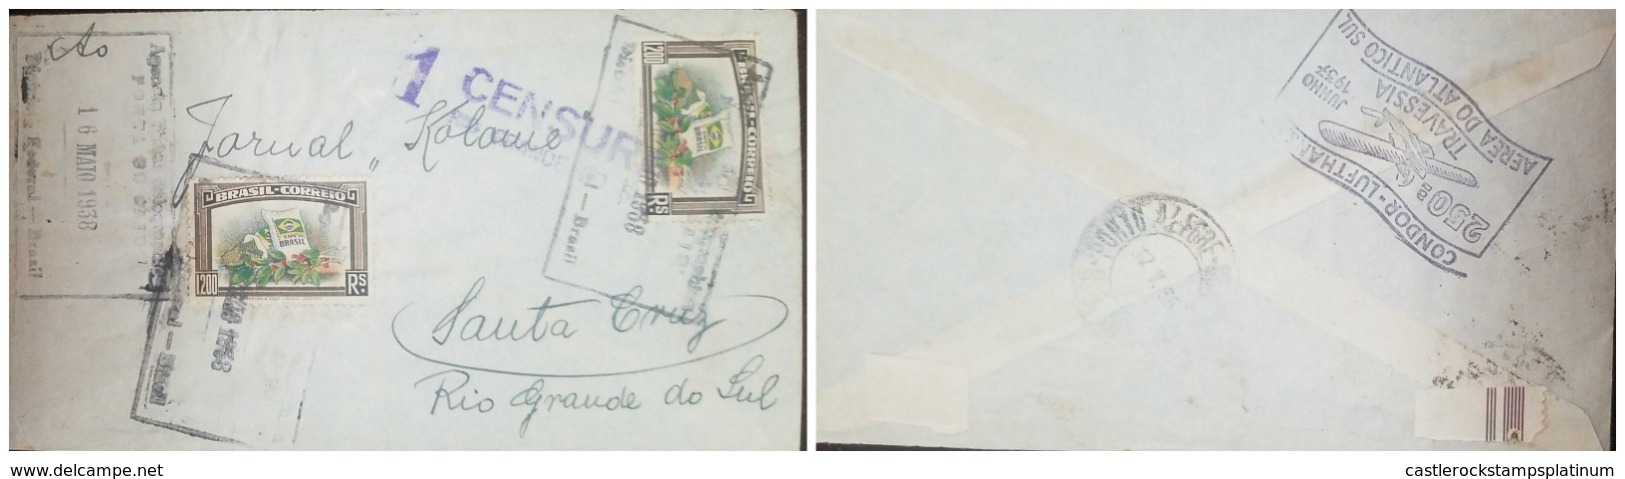 O) 1938 BRAZIL, CONDOR LUFTHANSA - TRAVESSIA AEREA DO ATLANTICO -1 CENSURA, FEDERAL, BAGS OF BRAZILIAN COFFEE - PONTA DO - Covers & Documents